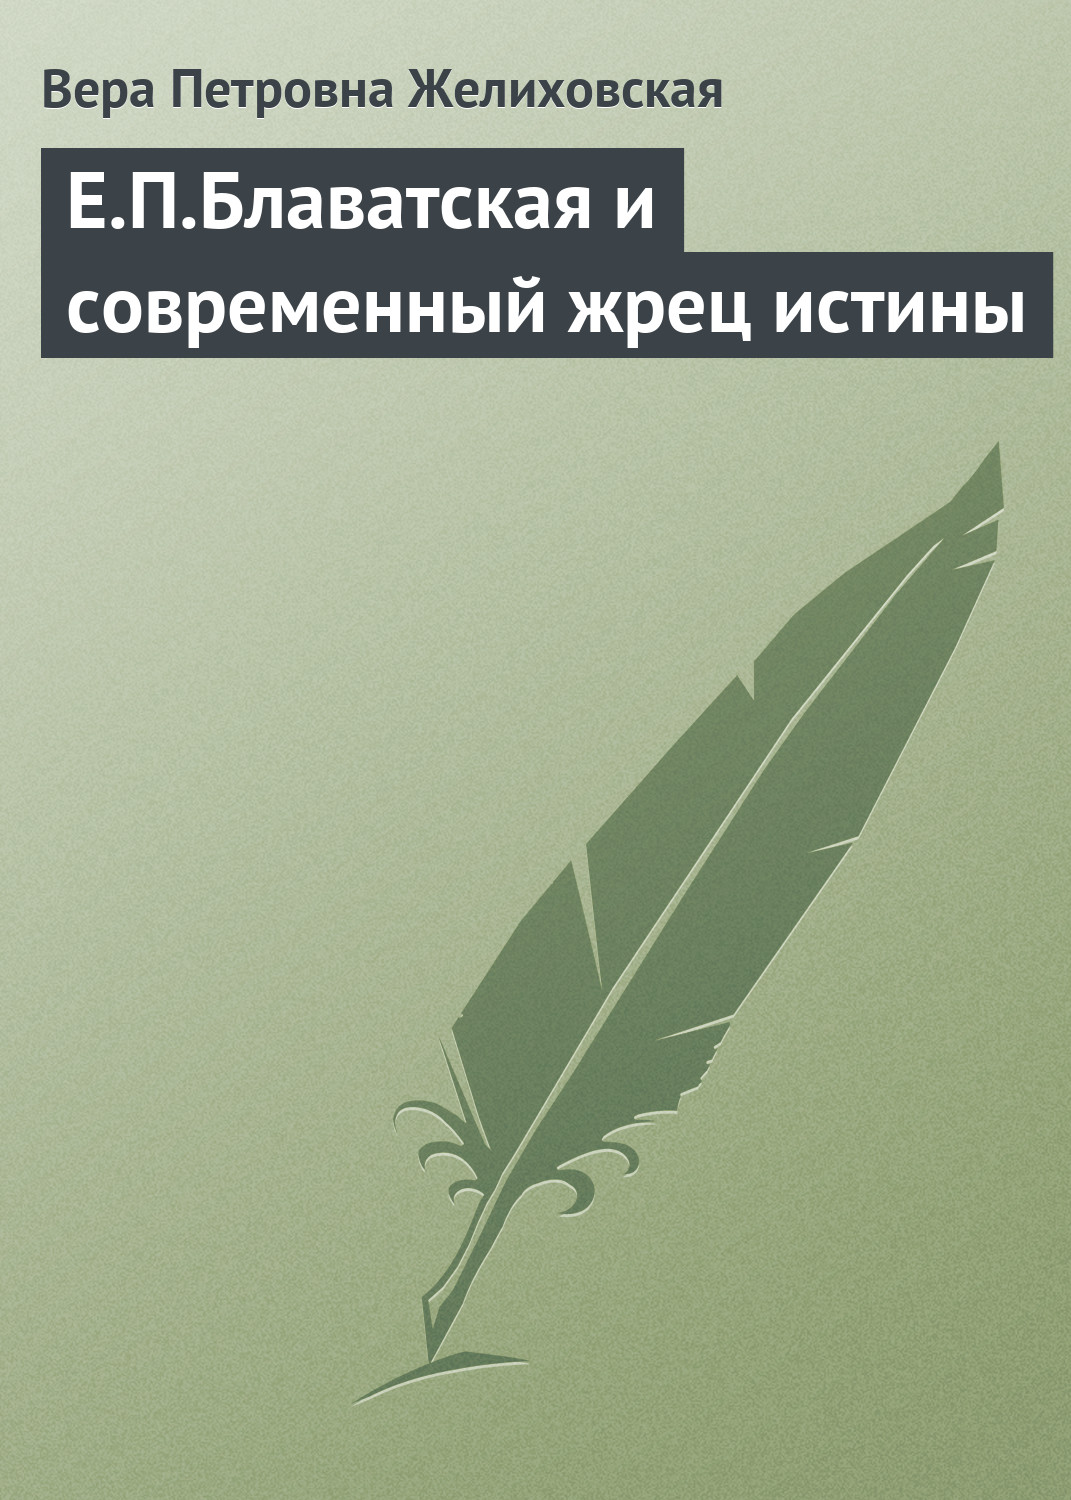 обложка электронной книги Е.П.Блаватская и современный жрец истины